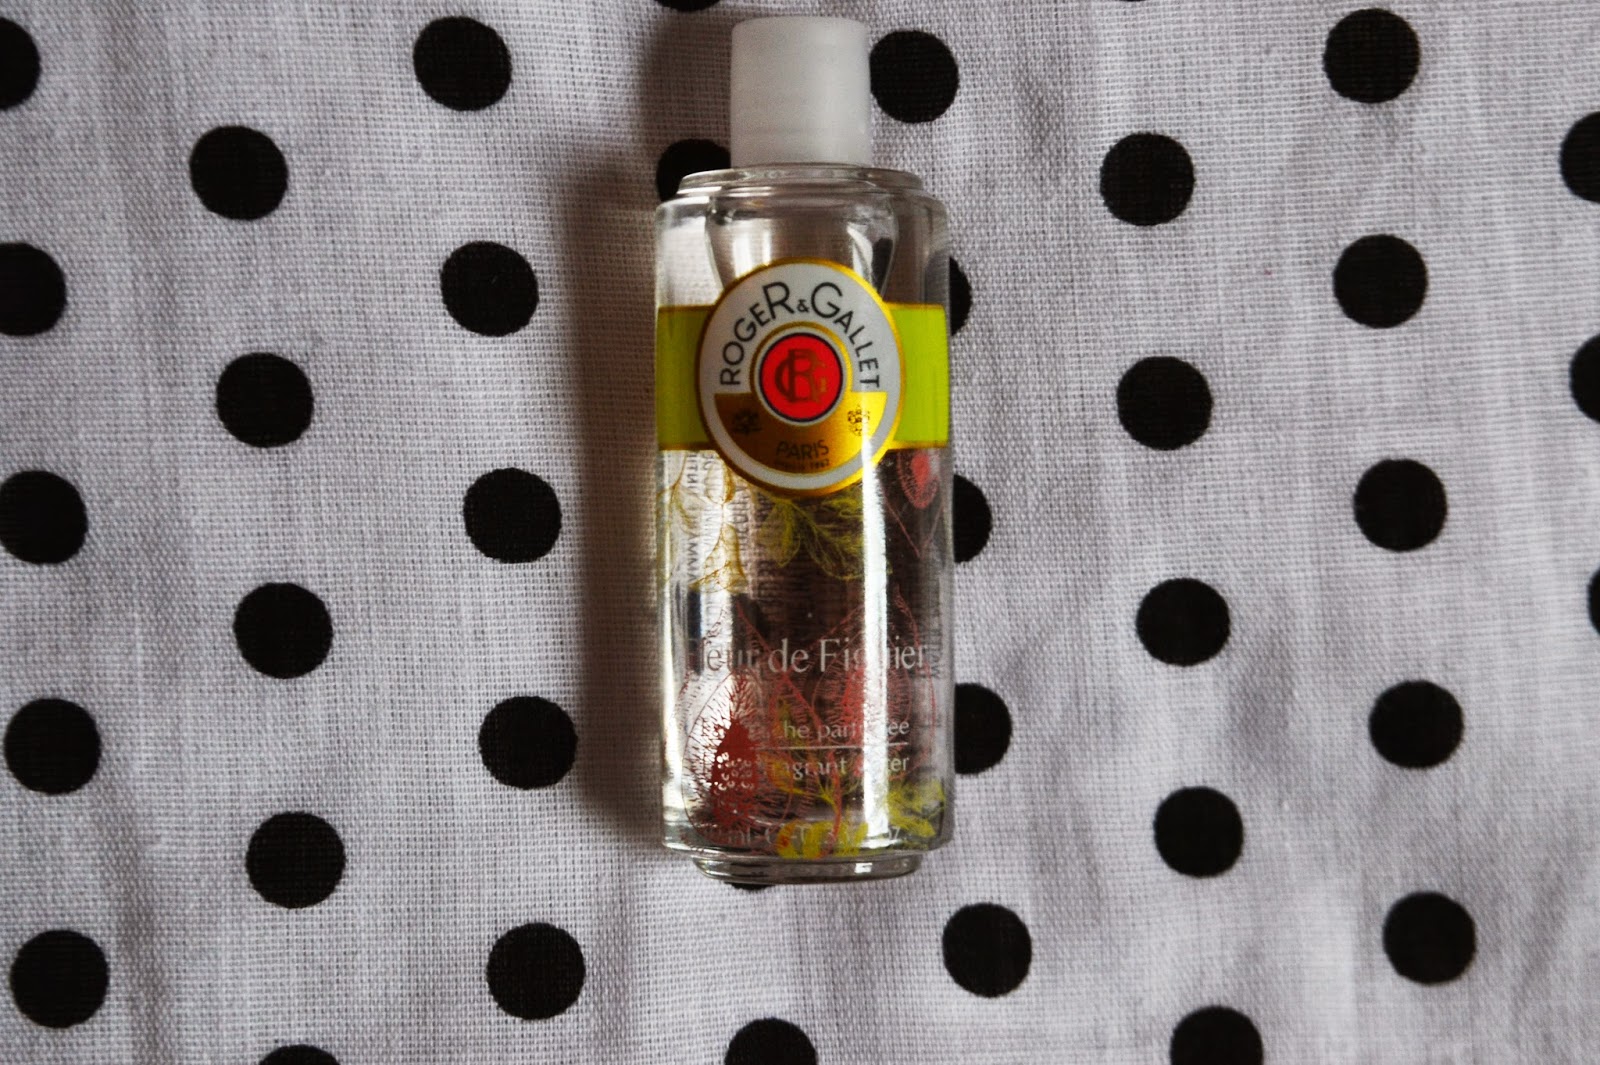 Small bottle of Roger & Gallet Fleur de Figuier Eau Fraîche perfume